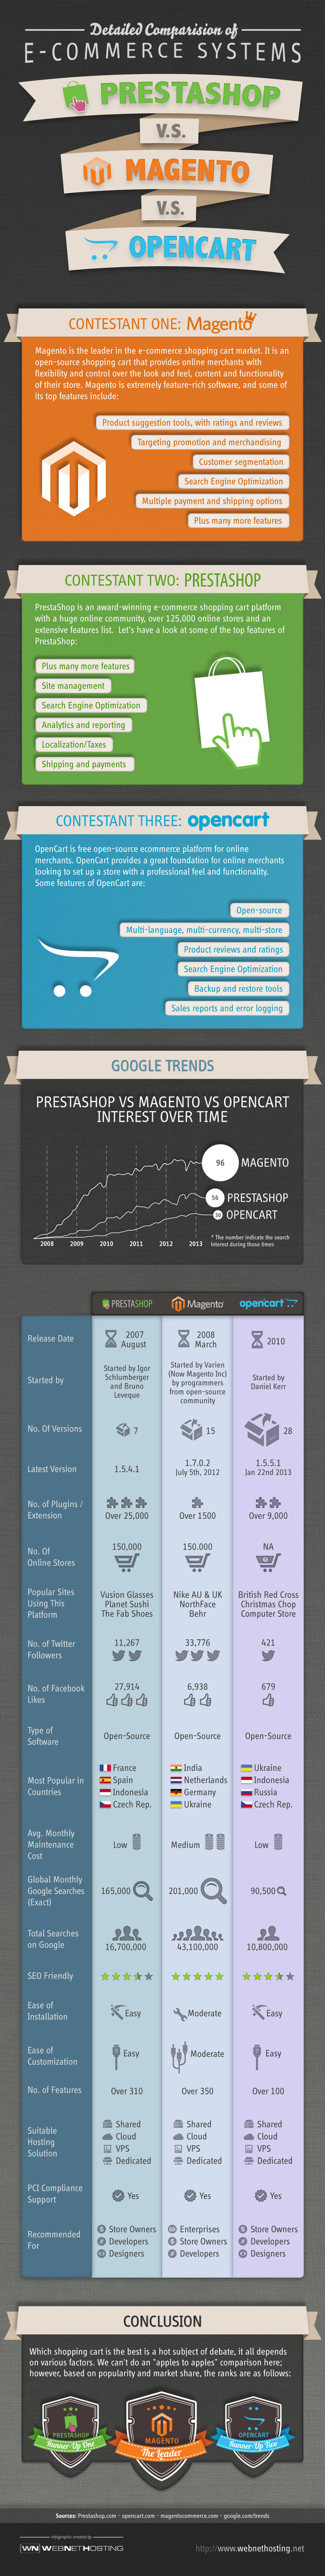 مقایسه اینفوگرافیک Prestashop و  Magento و  Opencart